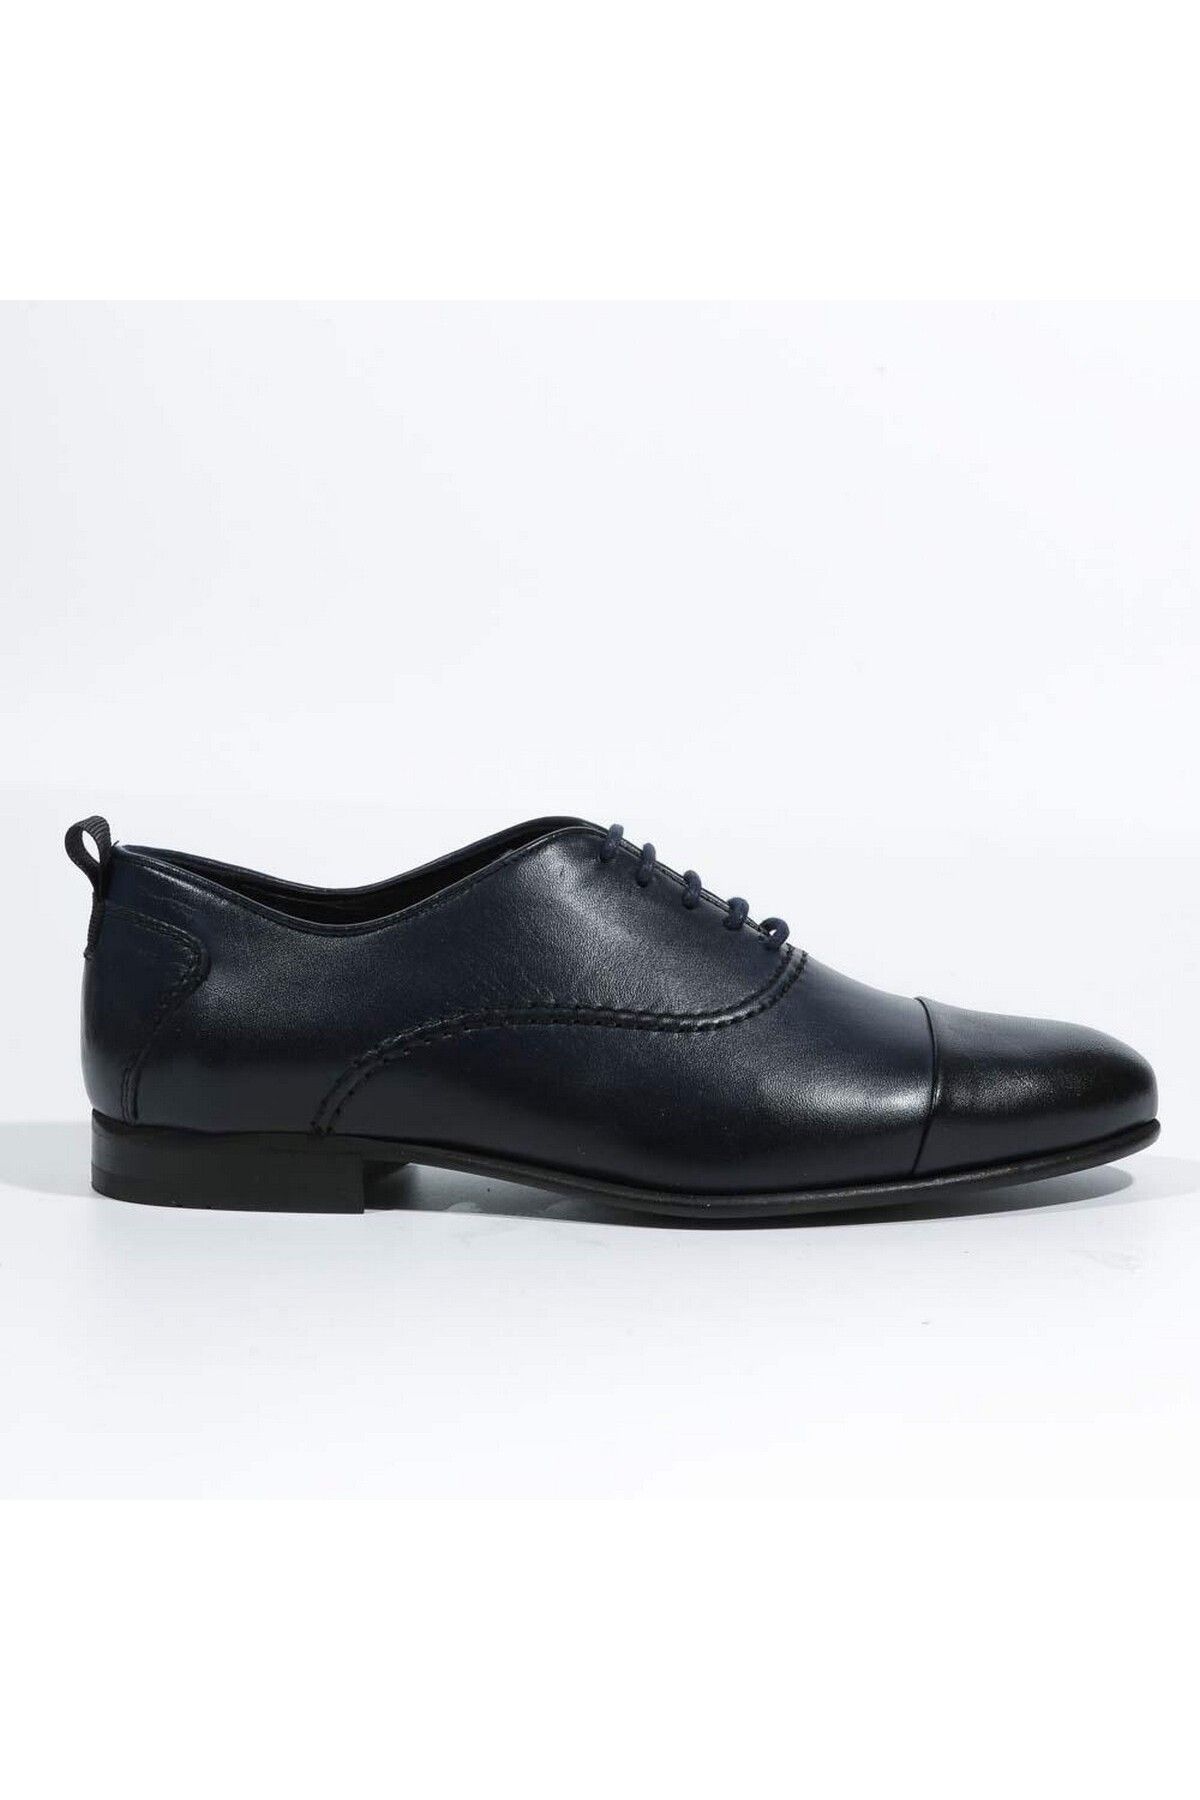 Tetri Gerçek Deri Erkek Lacivert Kundura - Erkek Lacivert Casual Ayakkabı - Damat Ayakkabısı - Antik Model